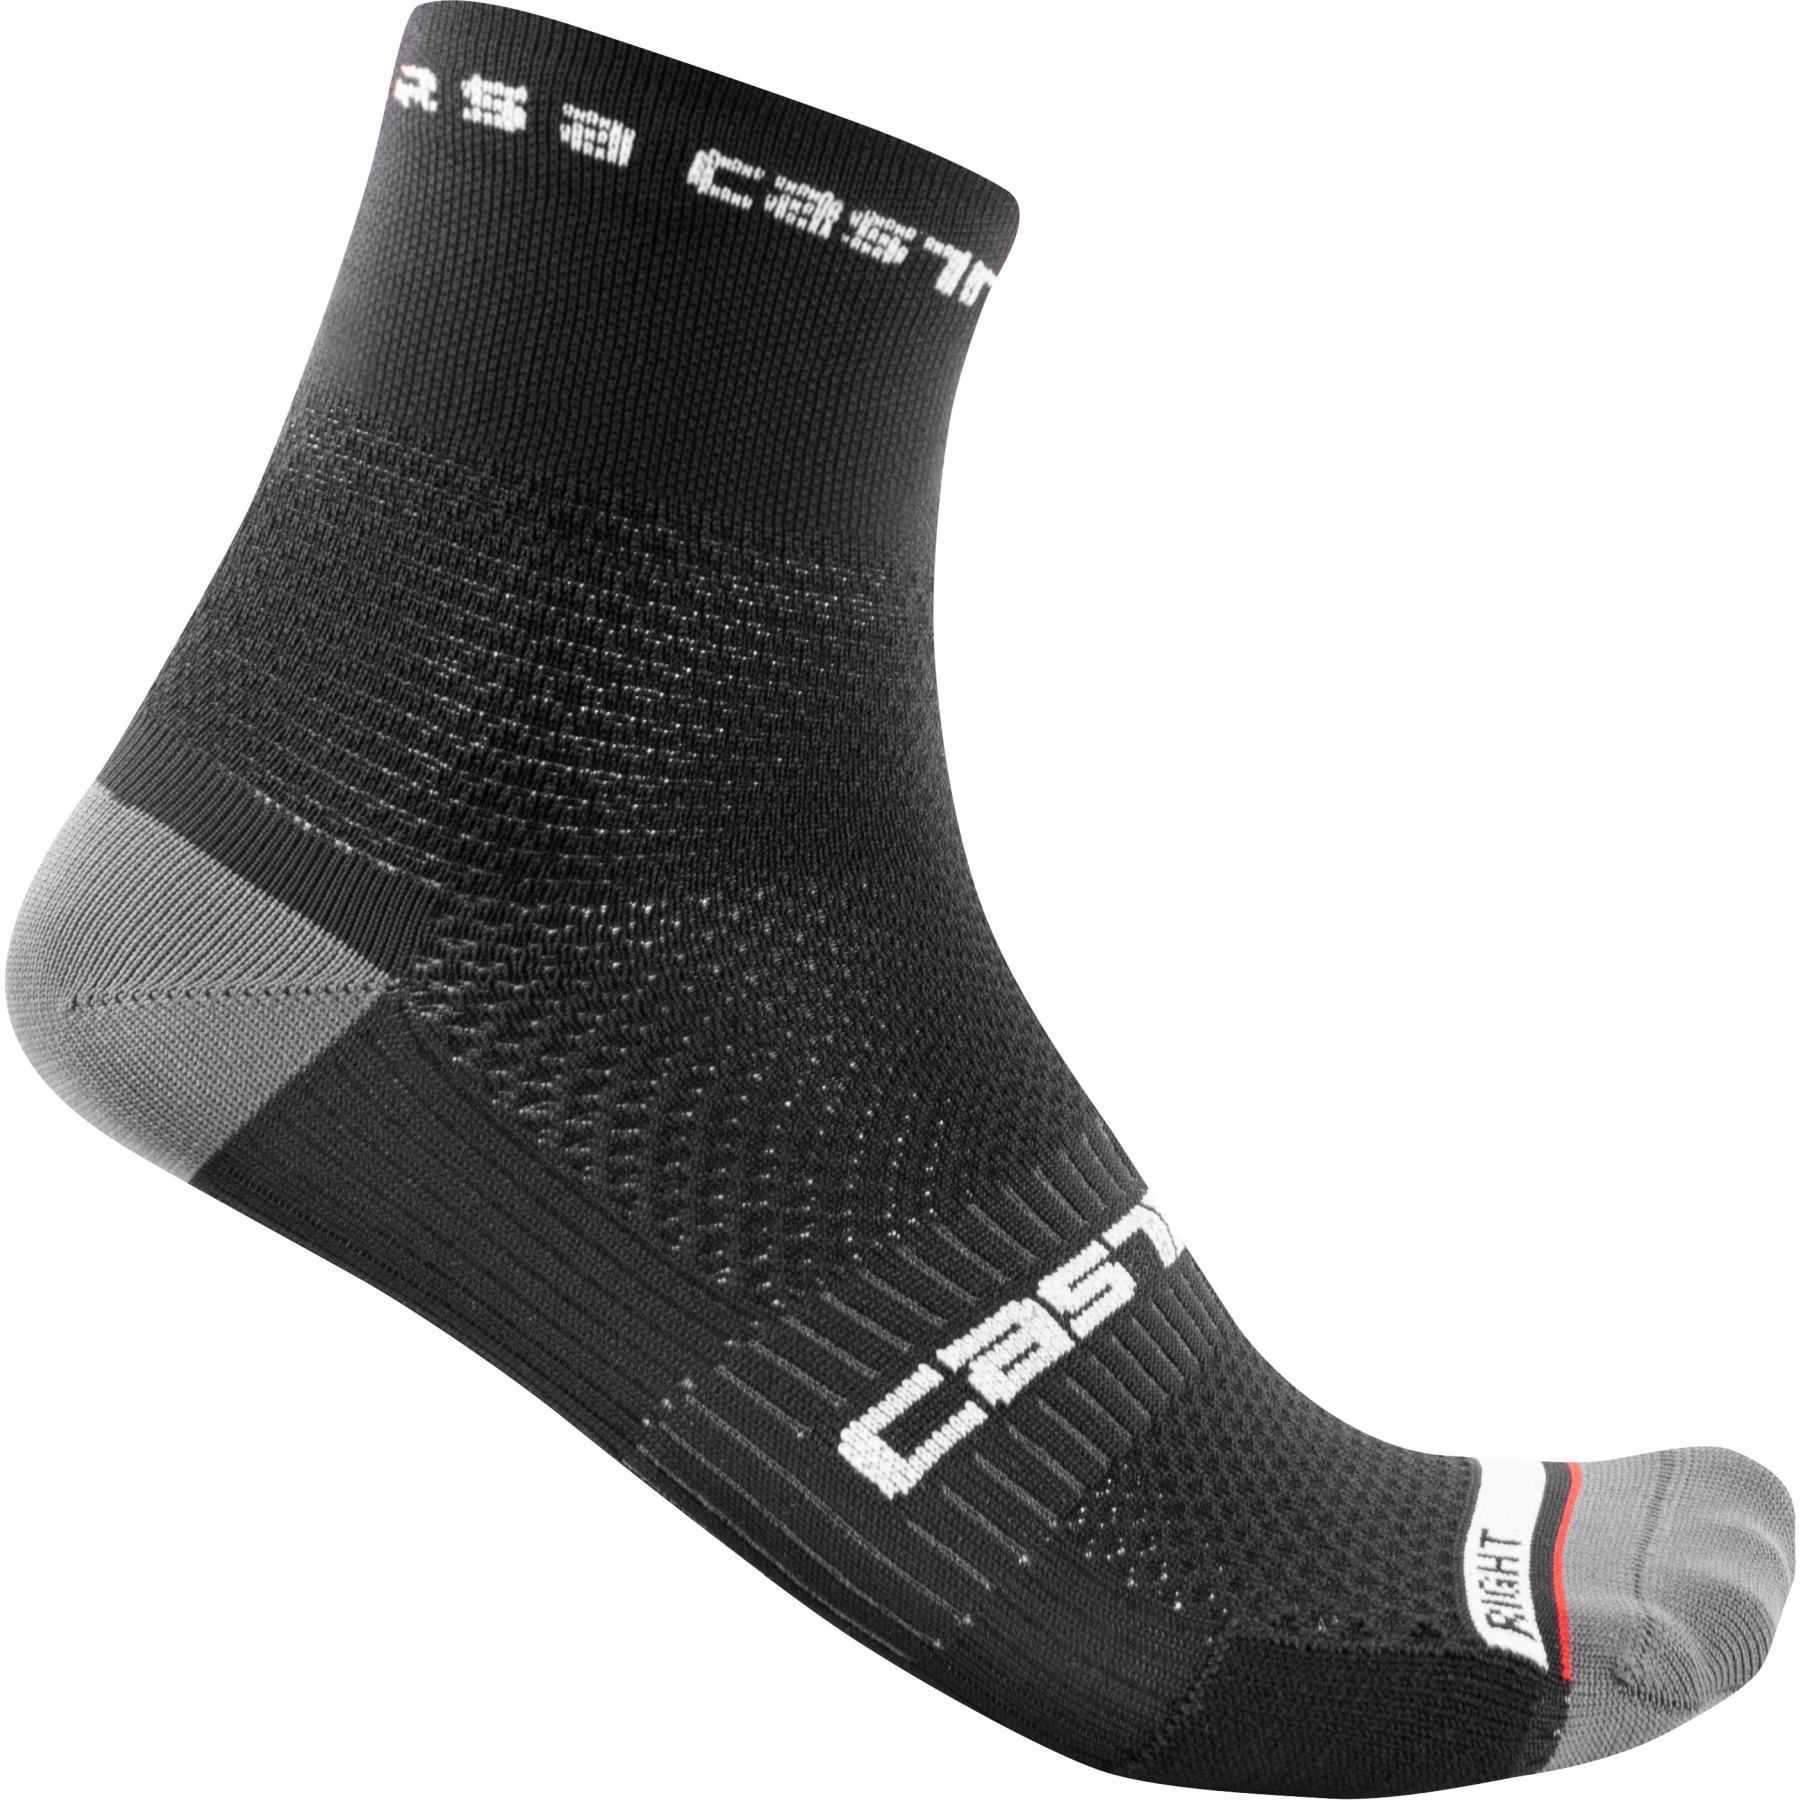 Produktbild von Castelli Rosso Corsa Pro 9 Socken - schwarz 010